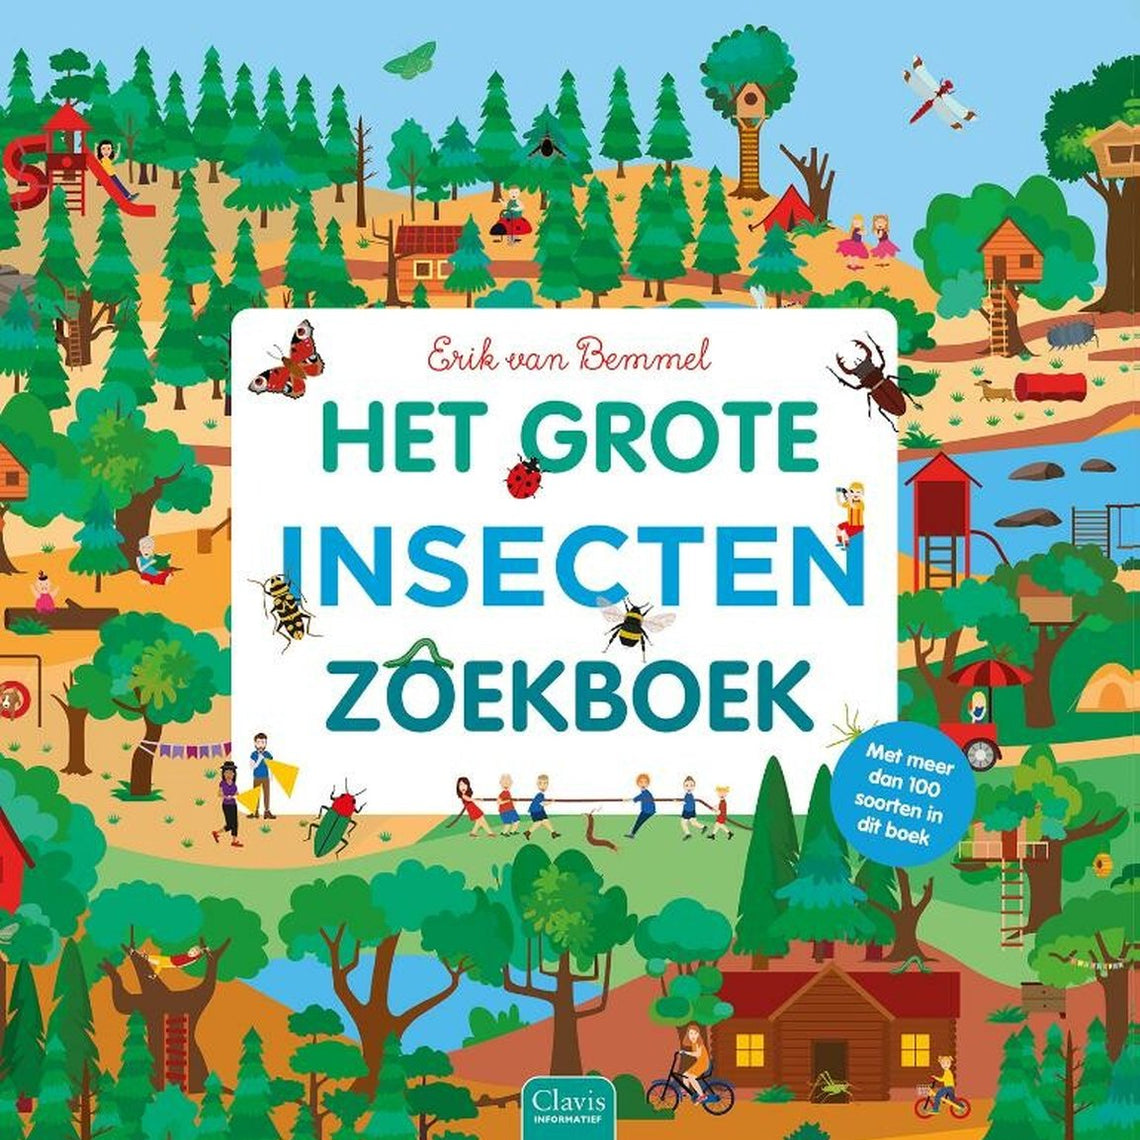 Het grote insectenzoekboek - Erik Van Bemmel